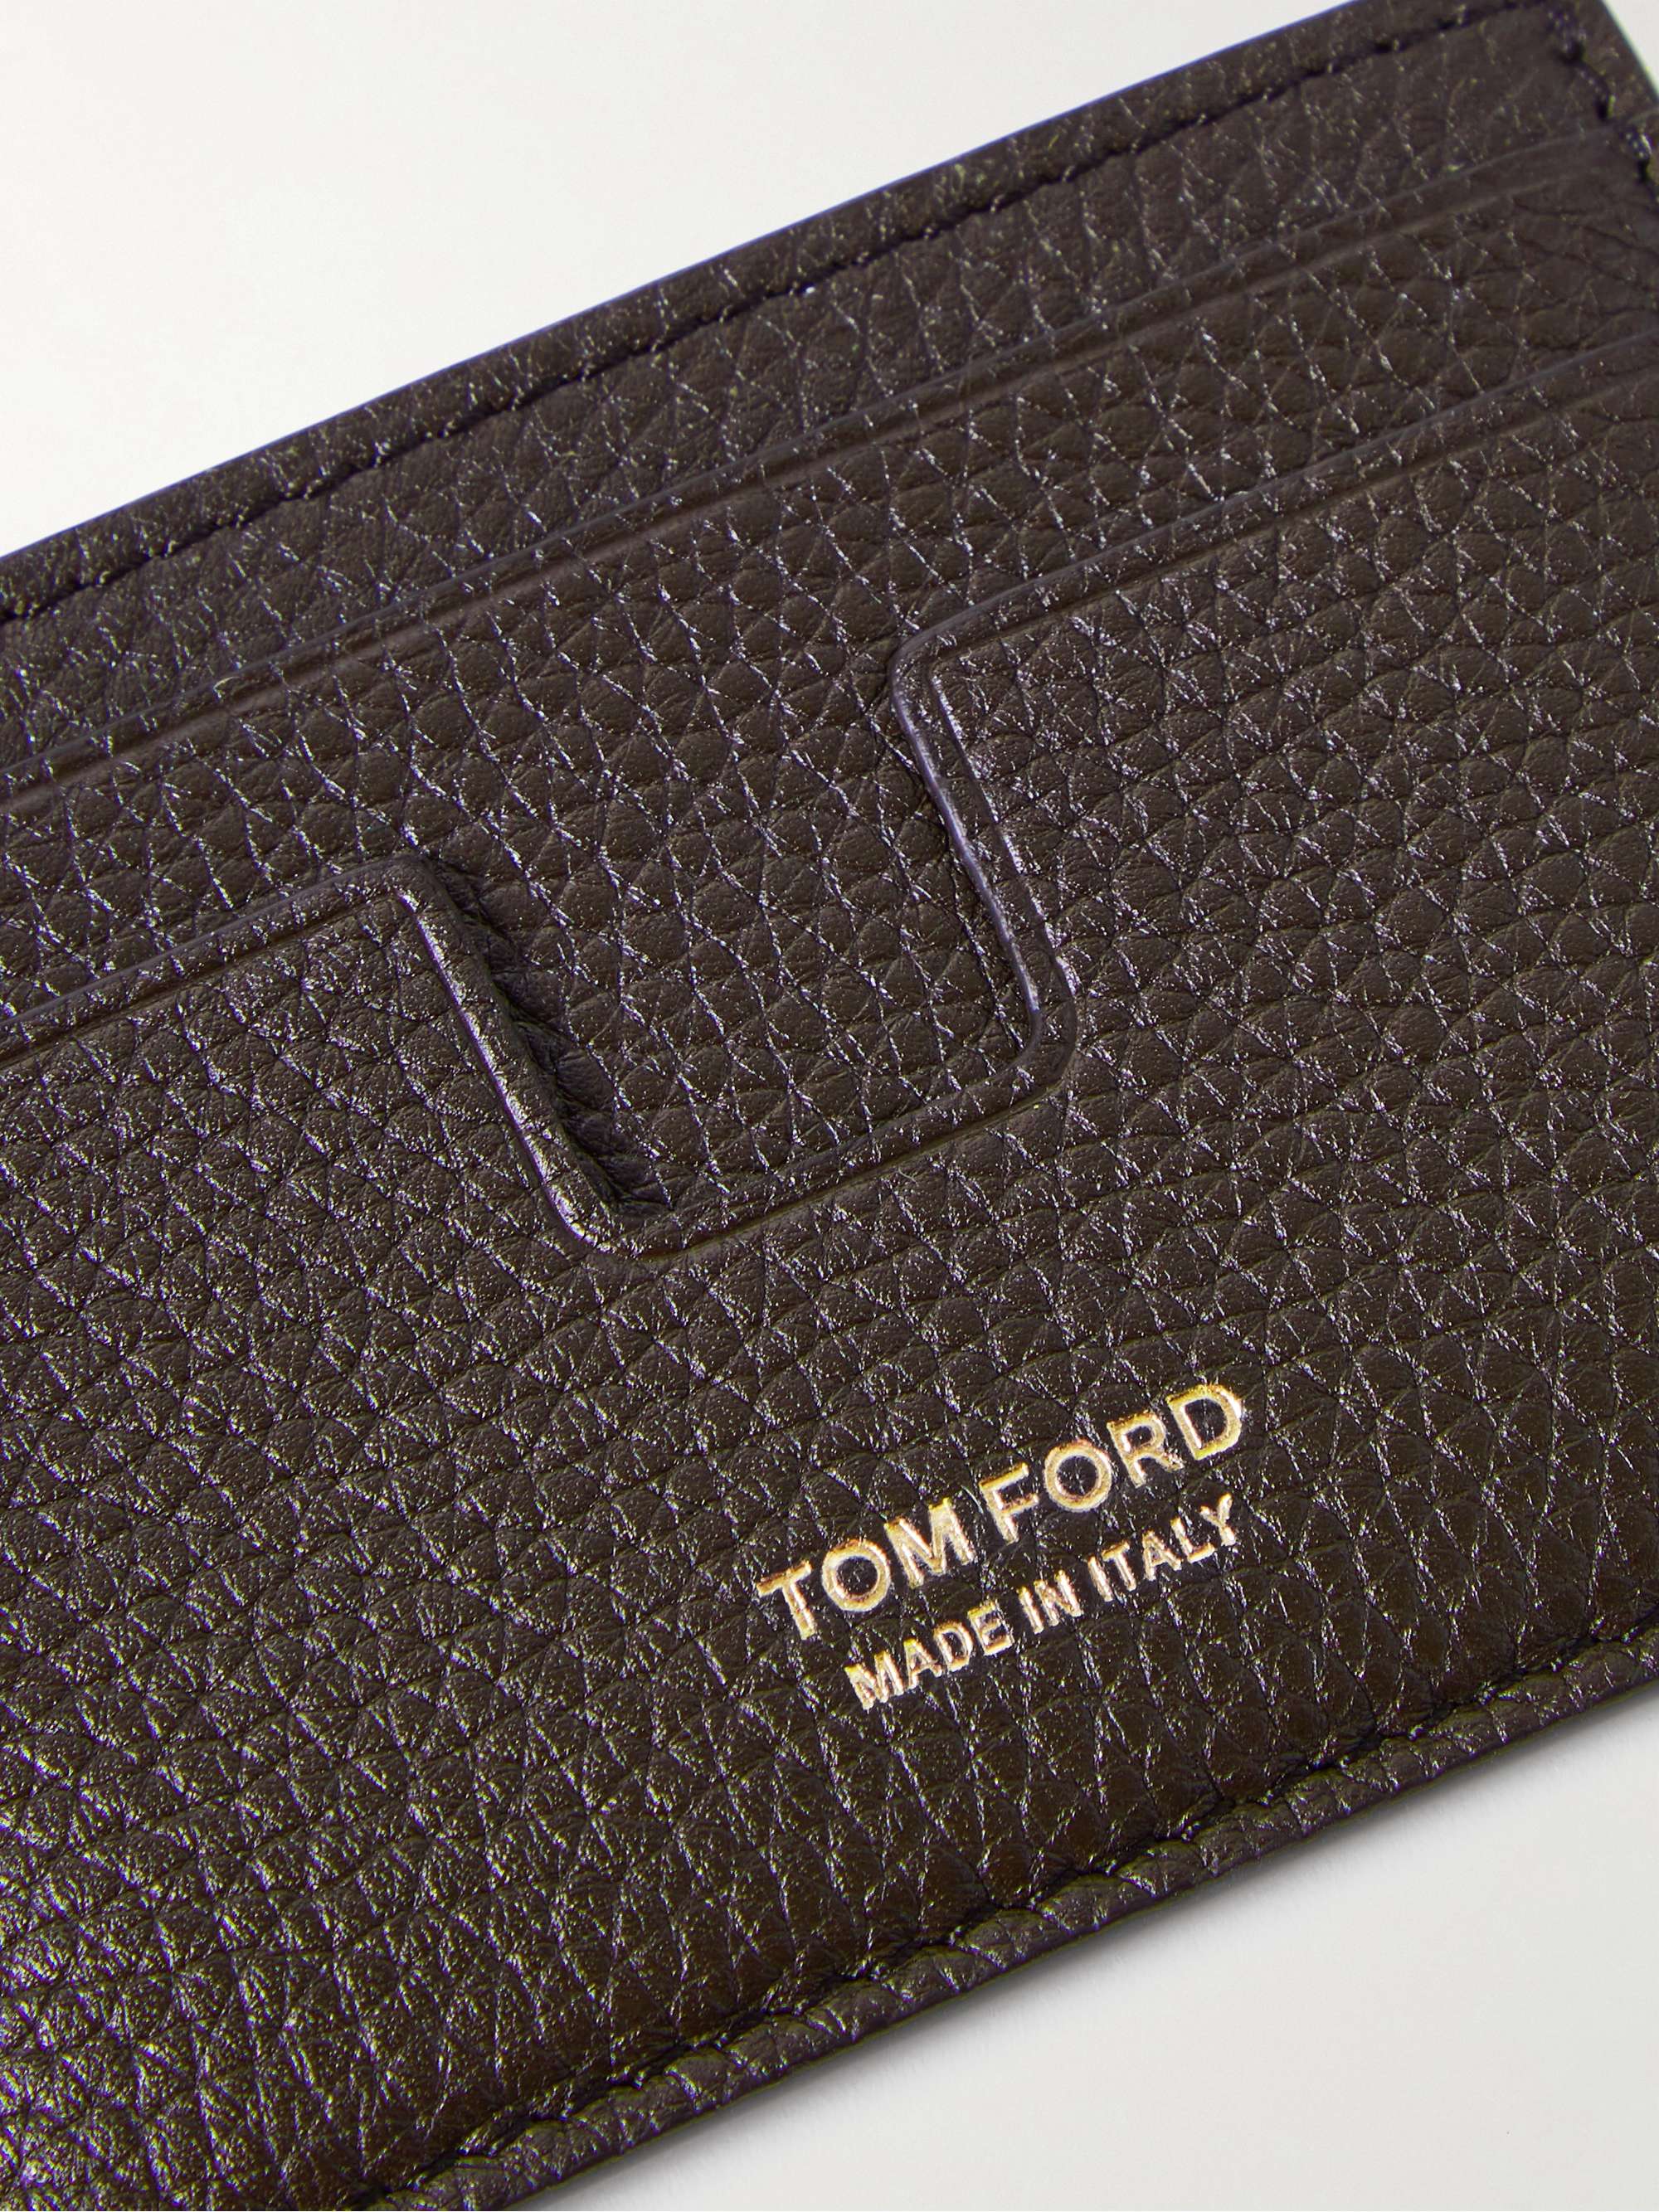 TOM FORD Full-Grain Leather Cardholder